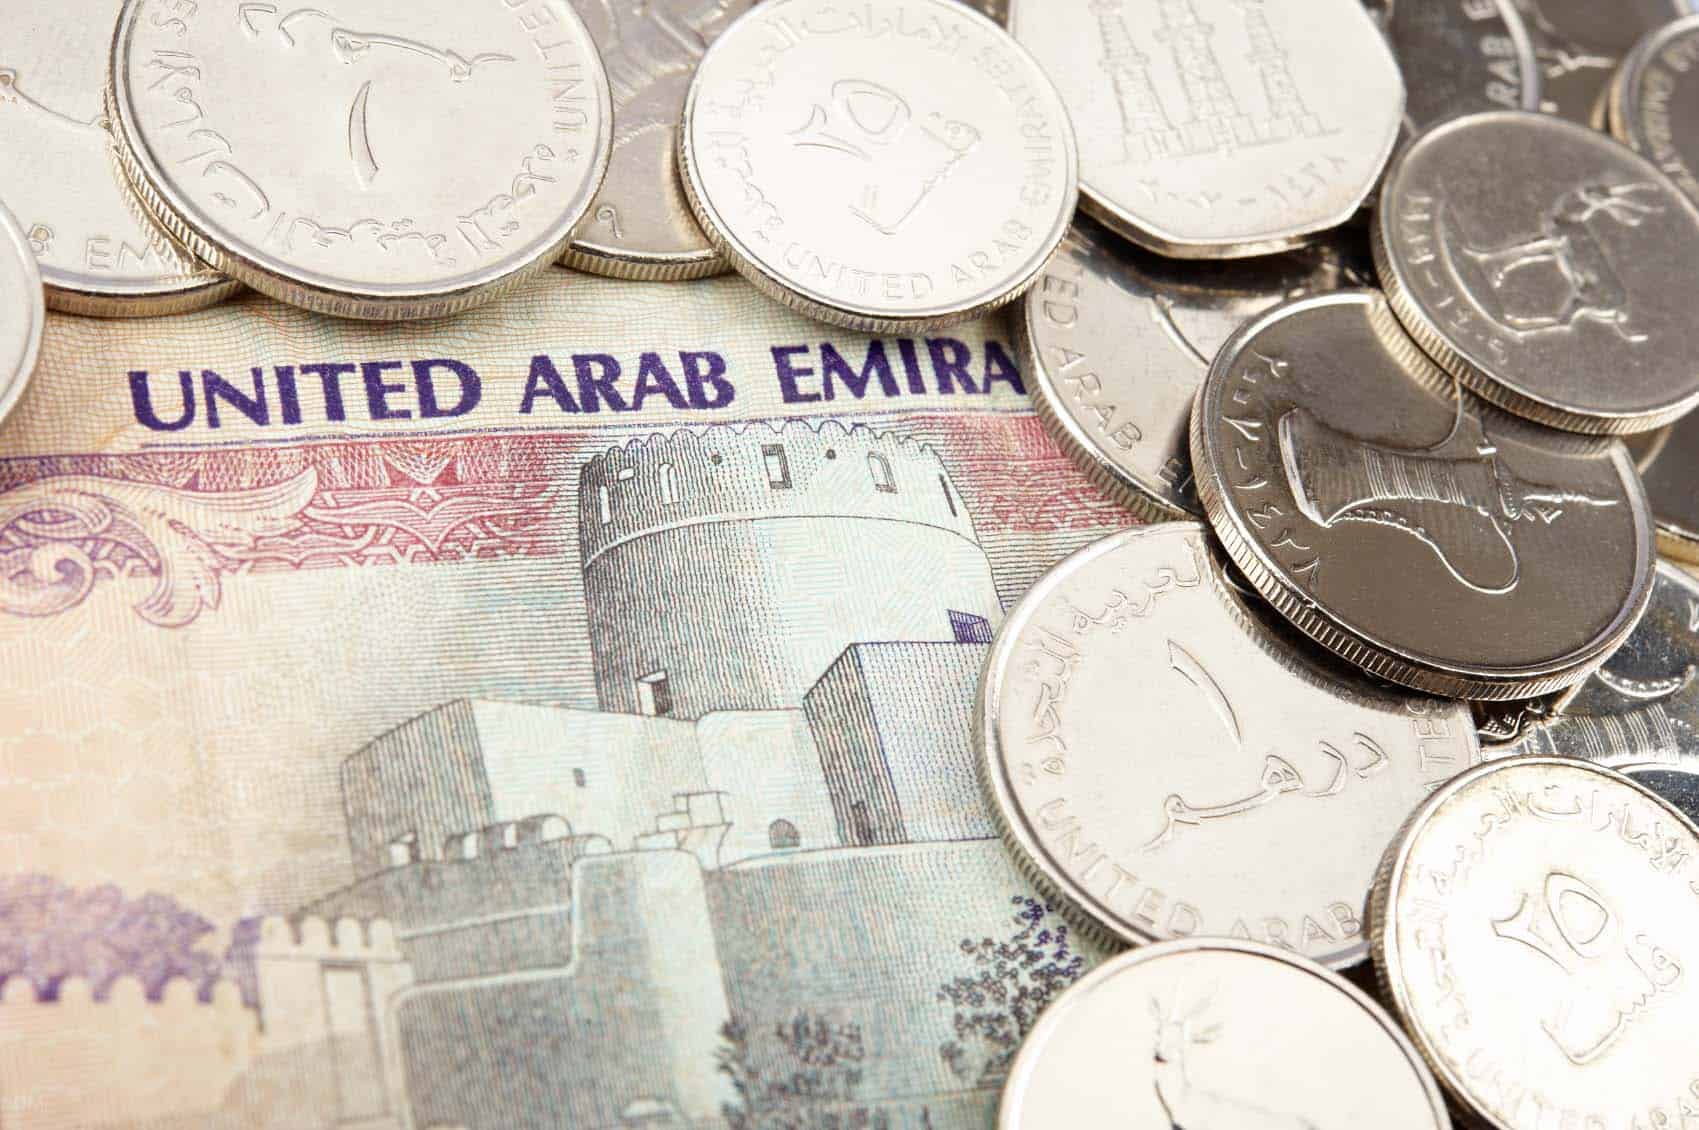 قطر به سلطنت 12 ساله سنگاپور پایان داد / بازار در سرازیری / ریزش قیمت لیر ترکیه و دینار عراق 4